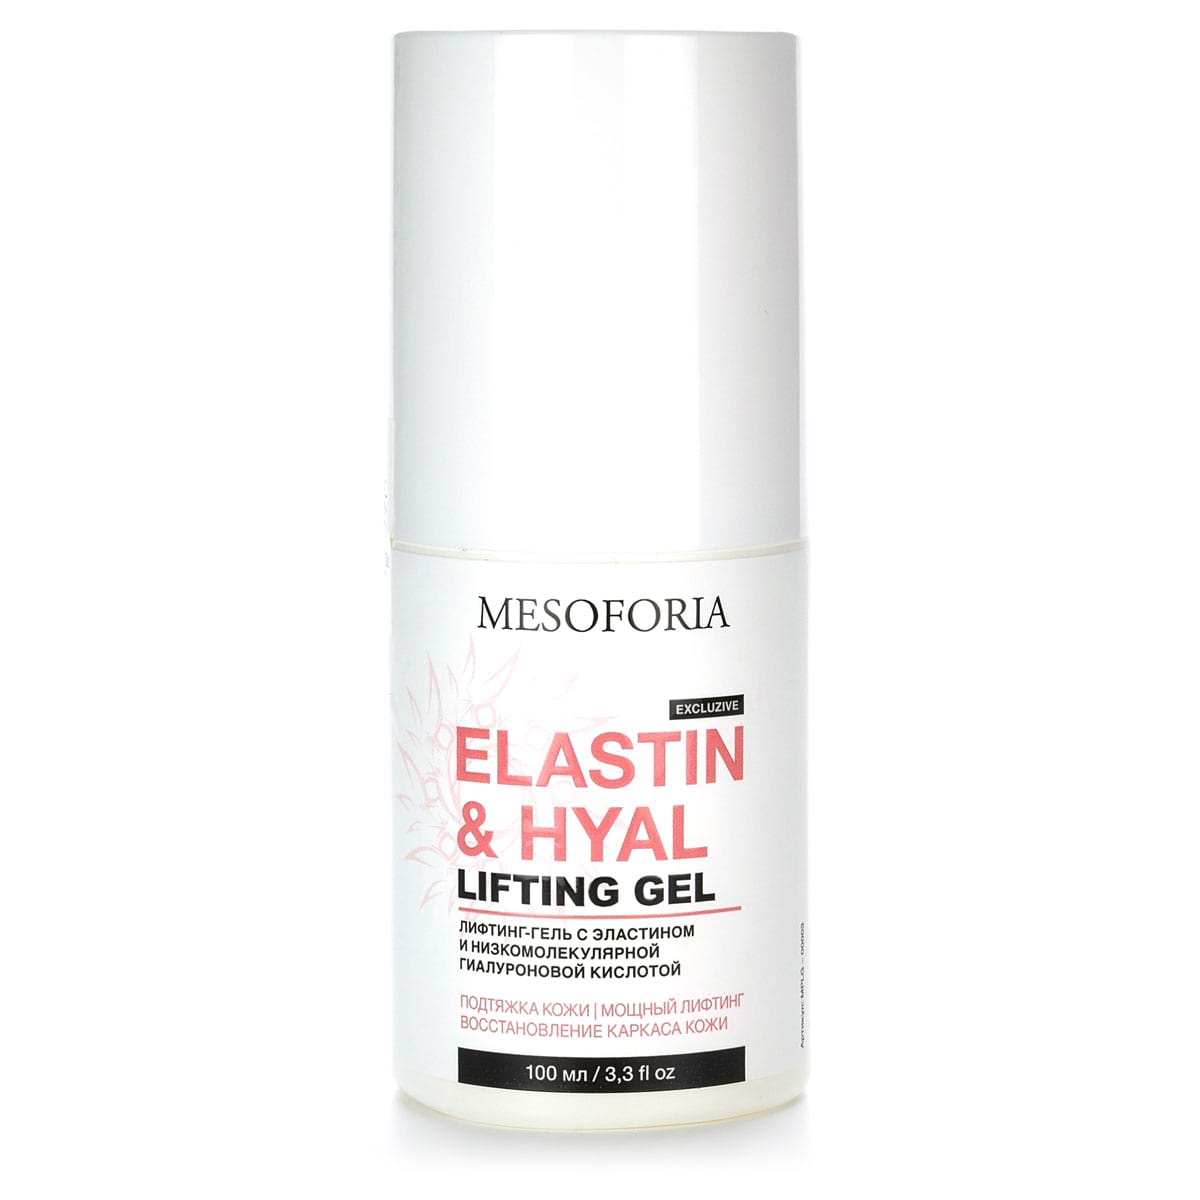 Elastin & Hyal Lifting Gel / Литфинг-гель с эластином и низкомолекулярной гиалуроновой кислотой, Mesoforia (Мезофория) – 100 мл